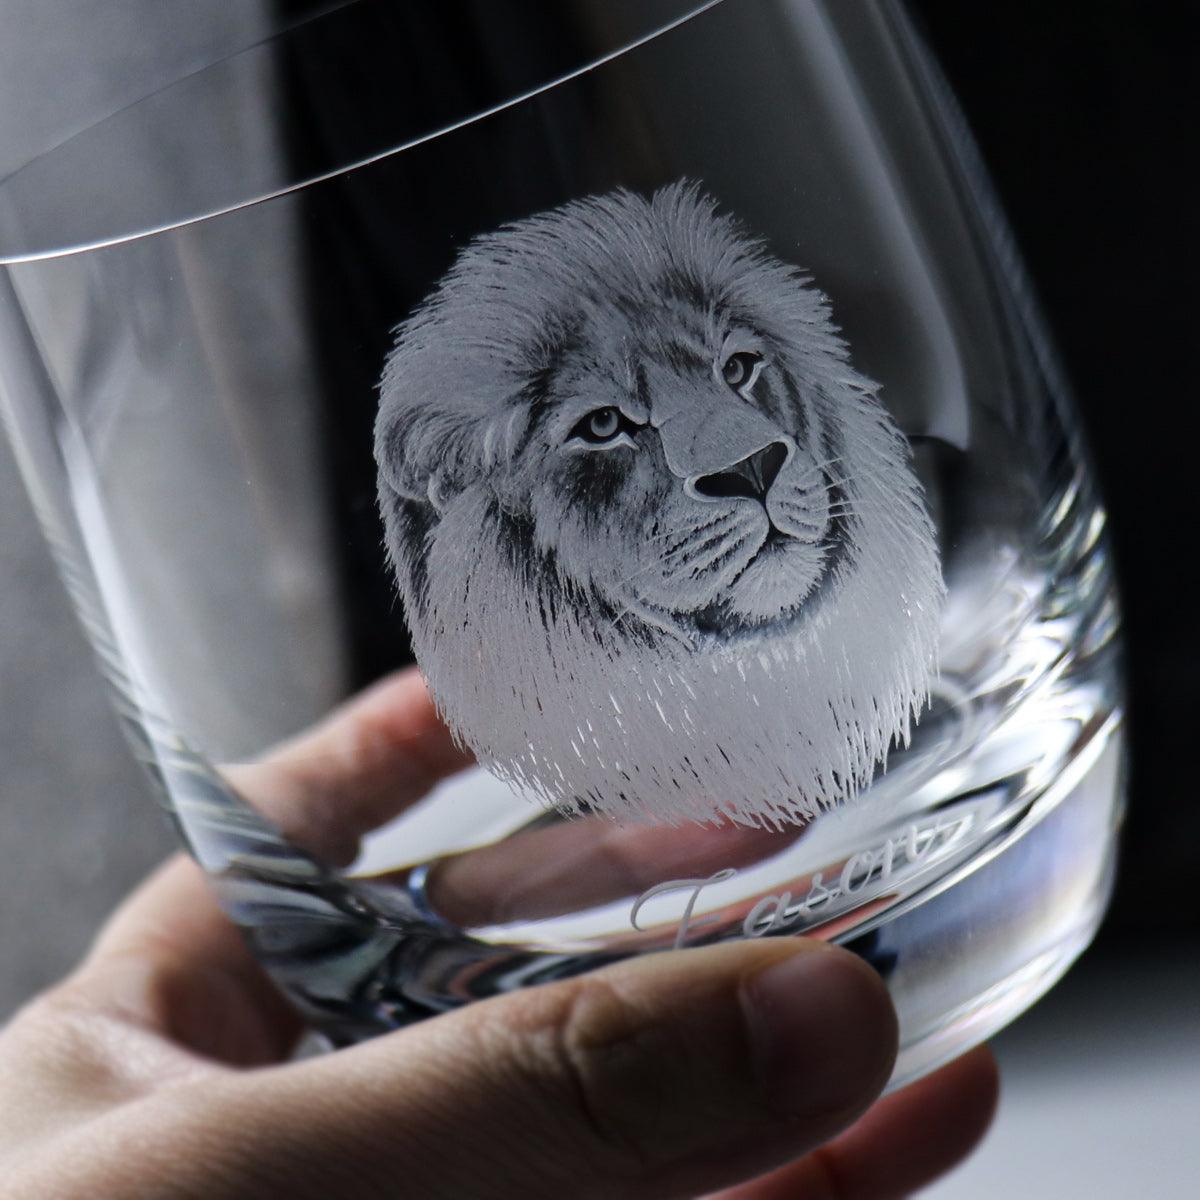 395cc 上海【Lucaris】獅 Lion威士忌水晶杯 雄獅 獅子座 - MSA玻璃雕刻